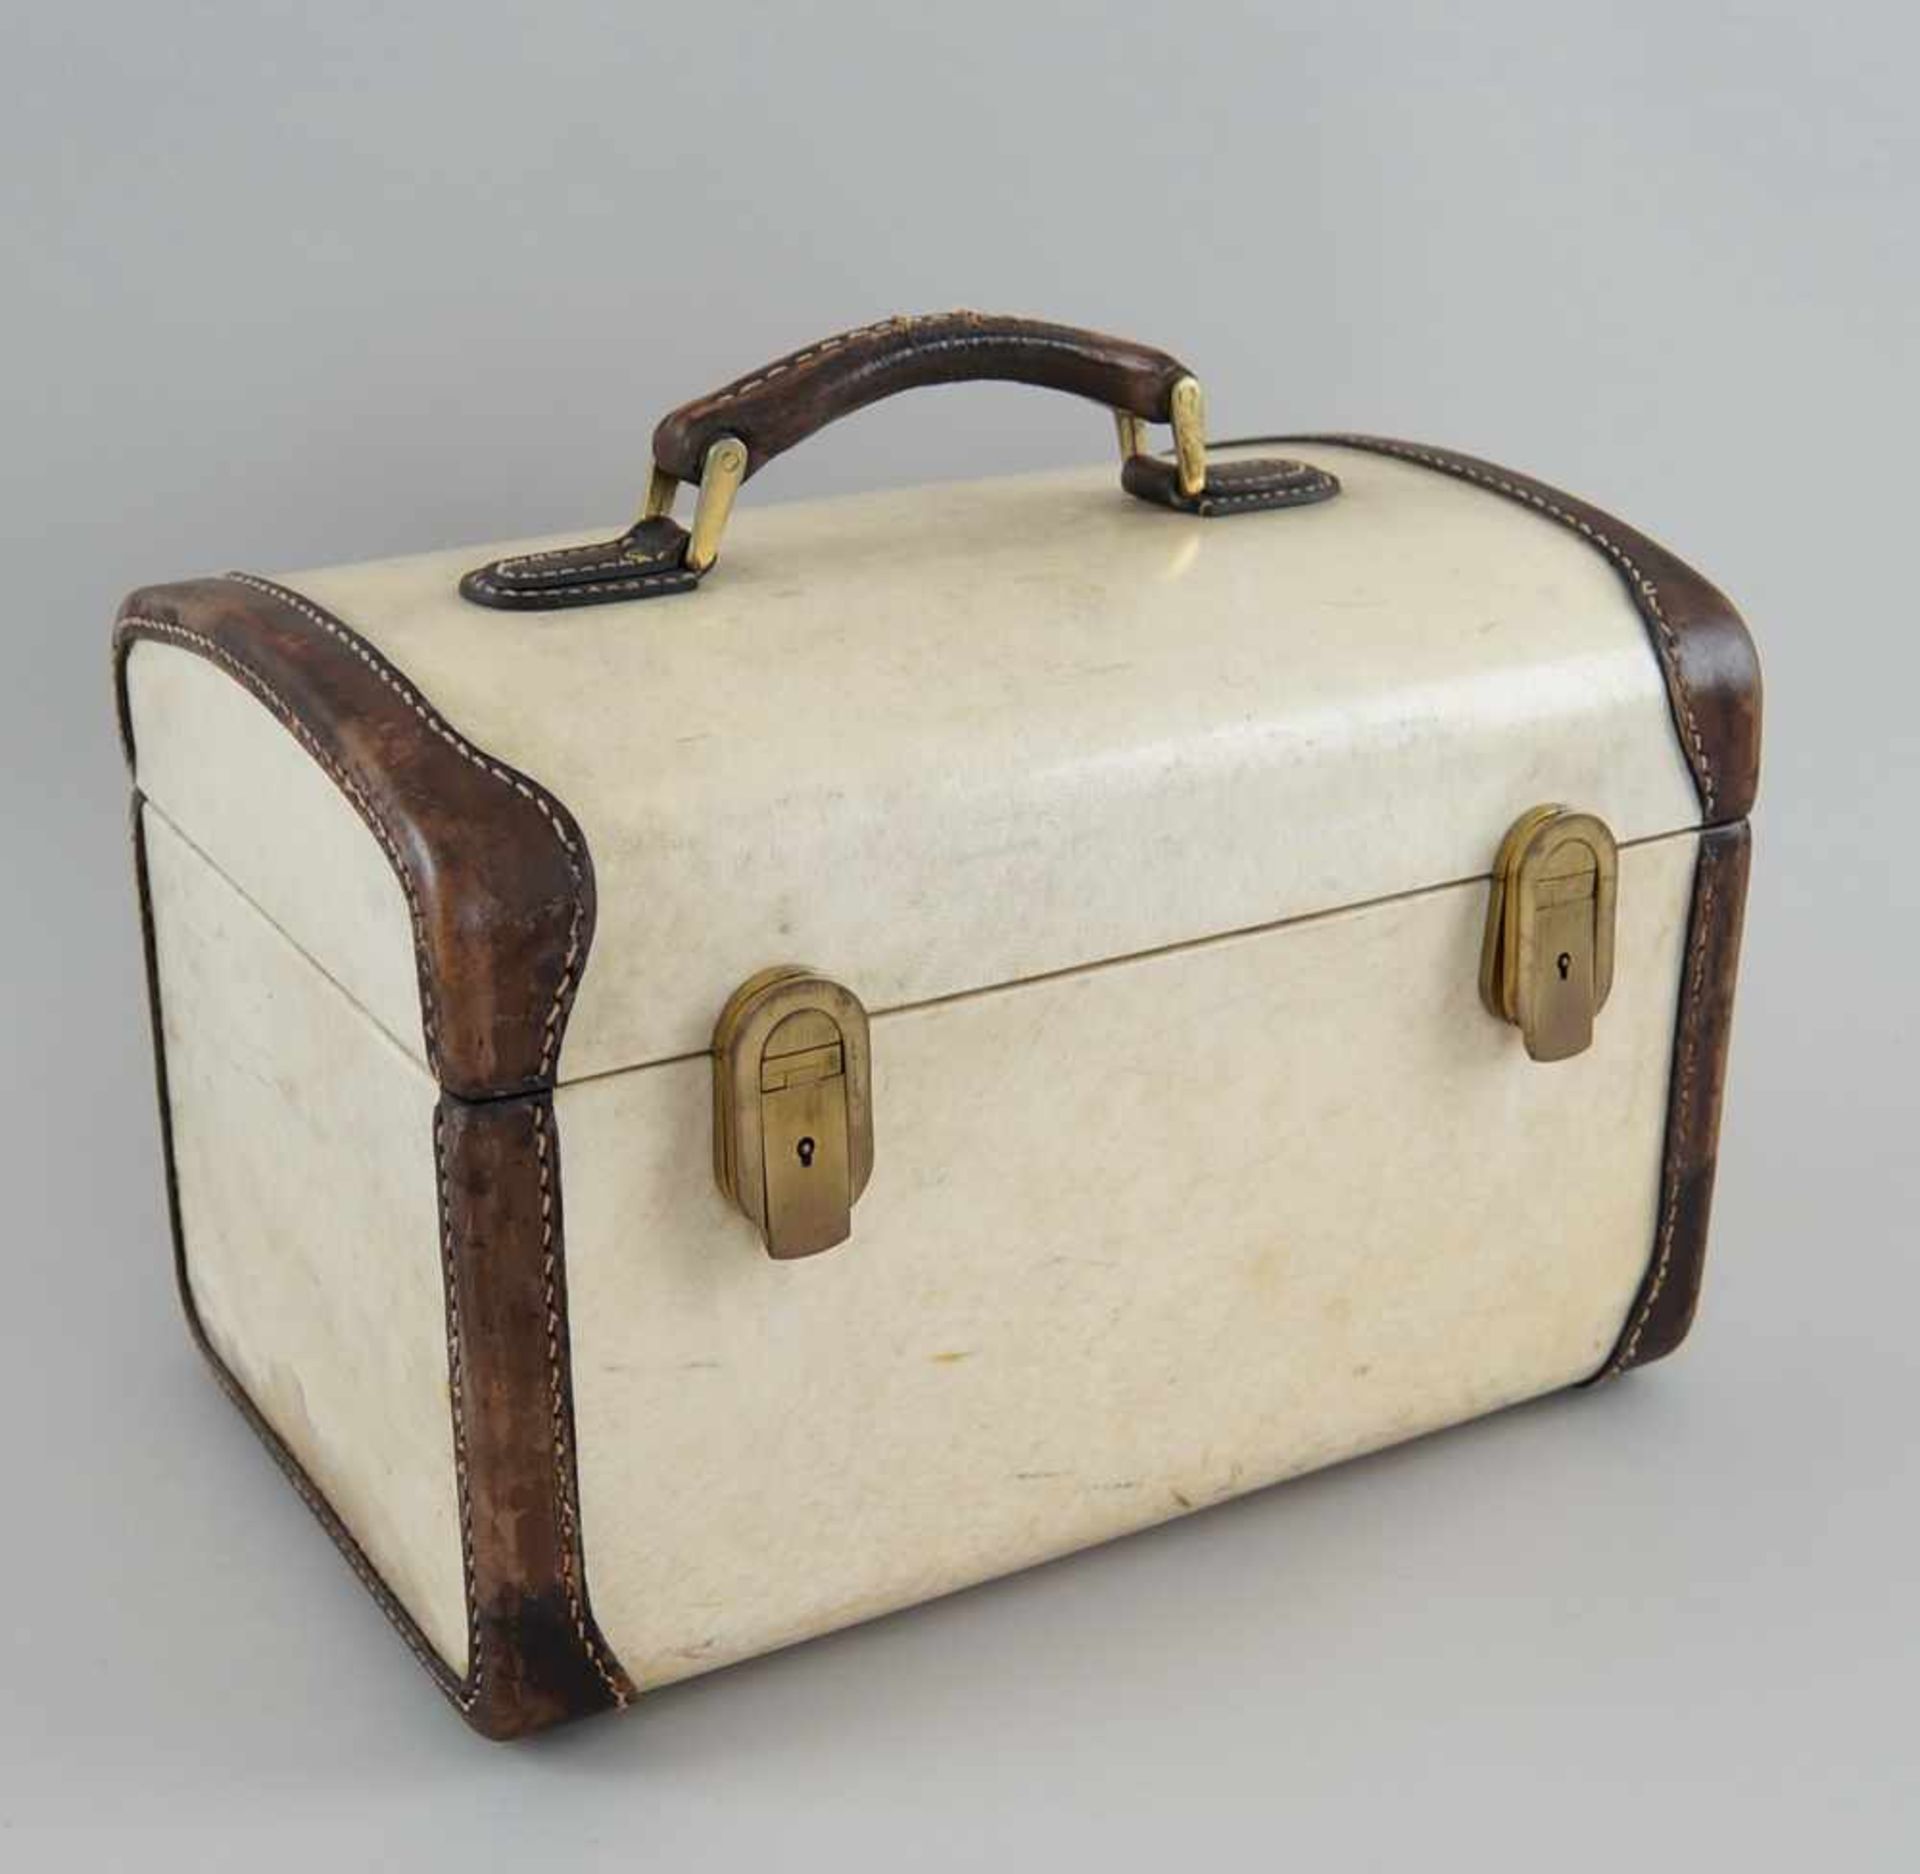 Feiner Koffer mit Beschlägen, Pergament, bezeichnet Franzi Italien, 22x32x22 cm